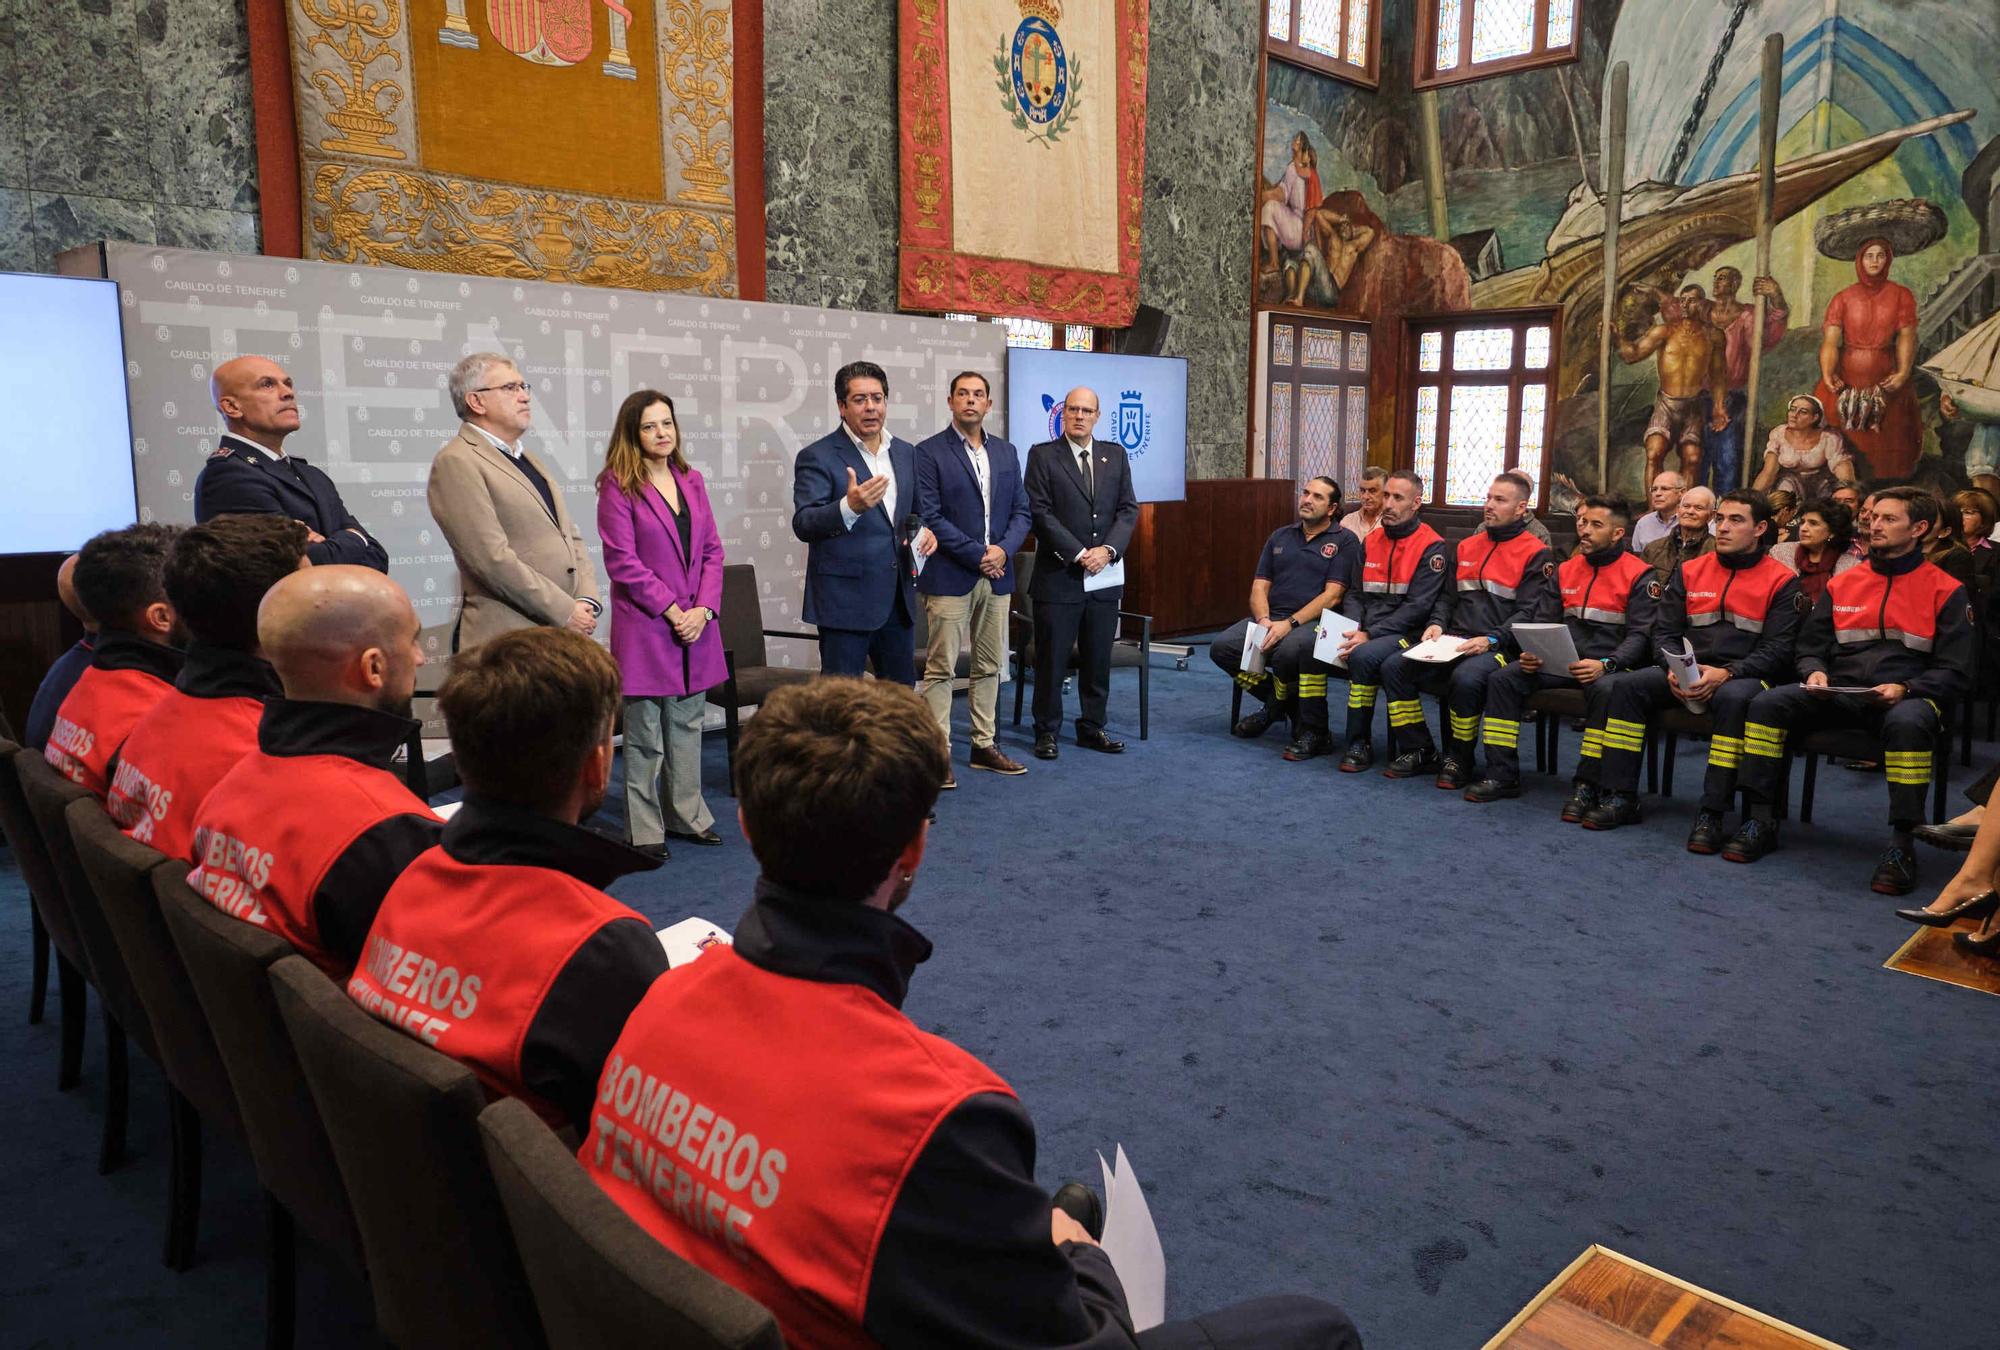 Incorporación de 10 nuevos bomberos y jefes de zona del Consorcio de Bomberos de Tenerife